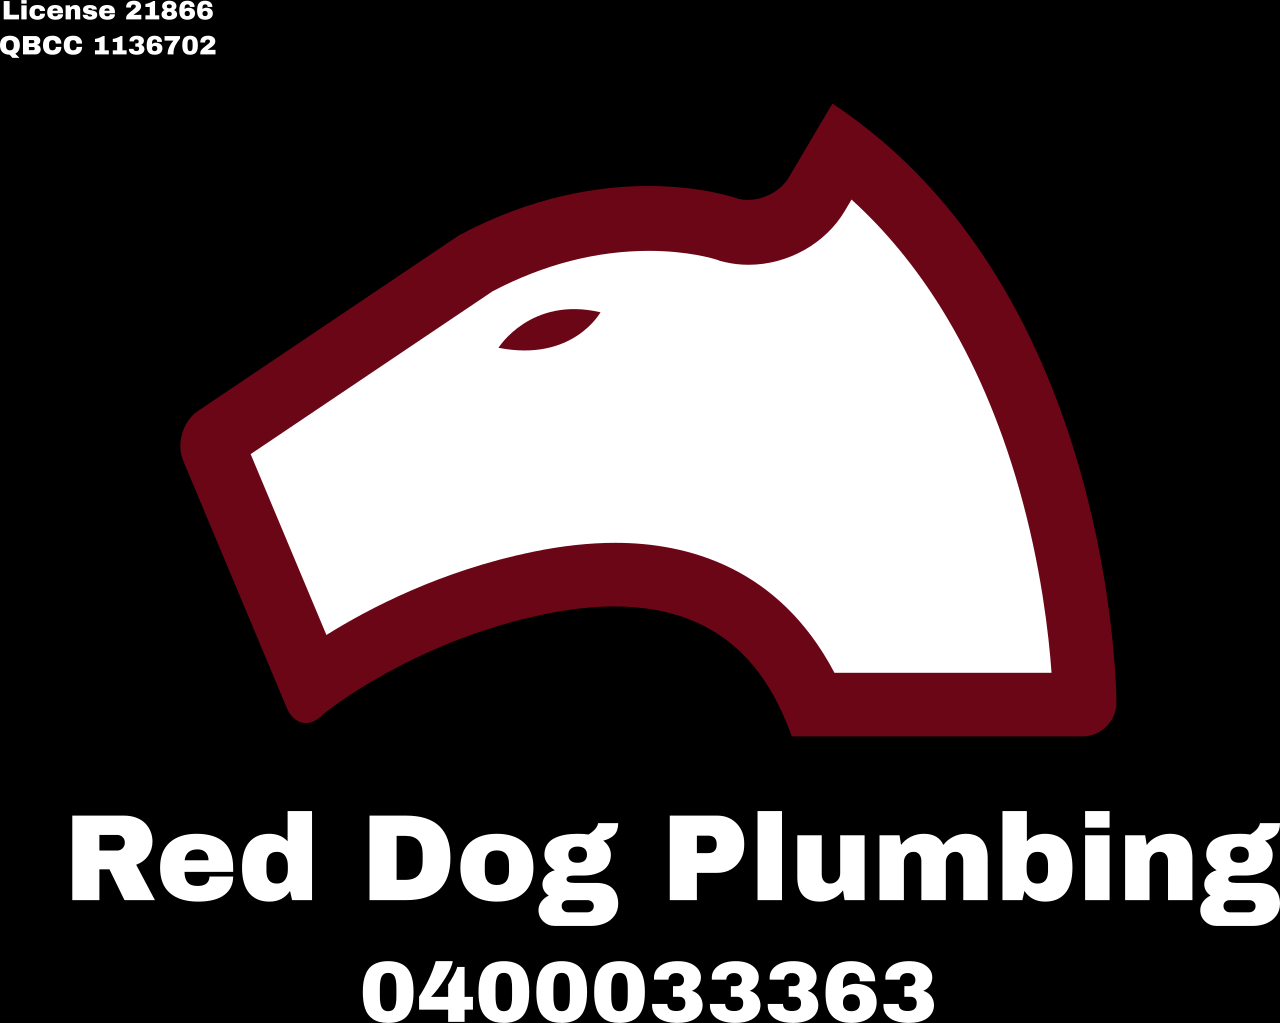 Red Dog Plumbing's logo